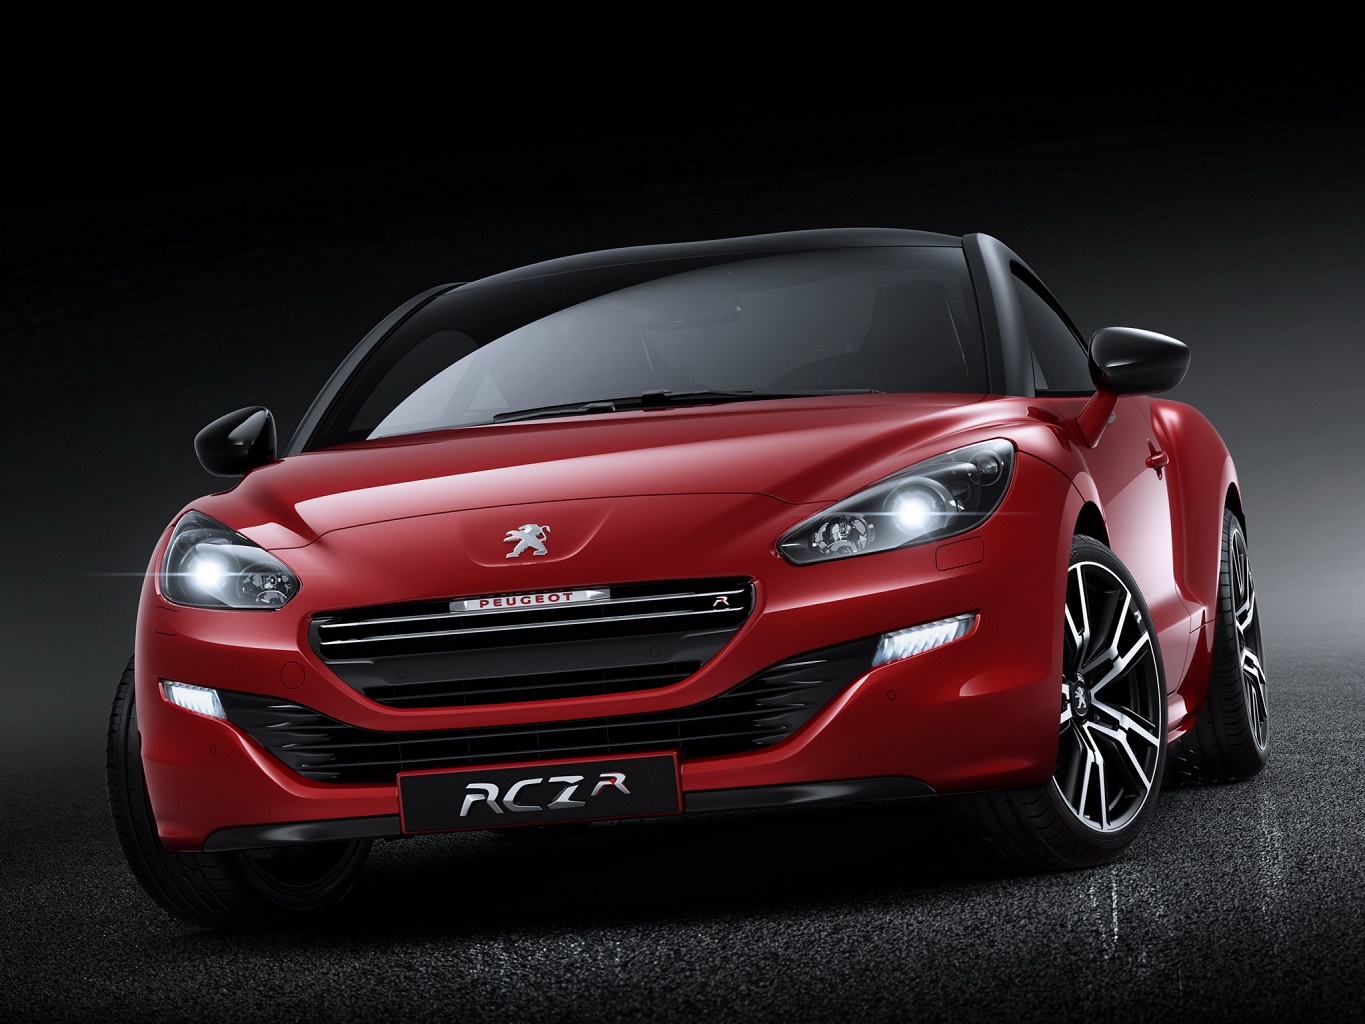 [Peugeot] RCZ R Concept - Page 4 2014+Peugeot+RCZ+R+3